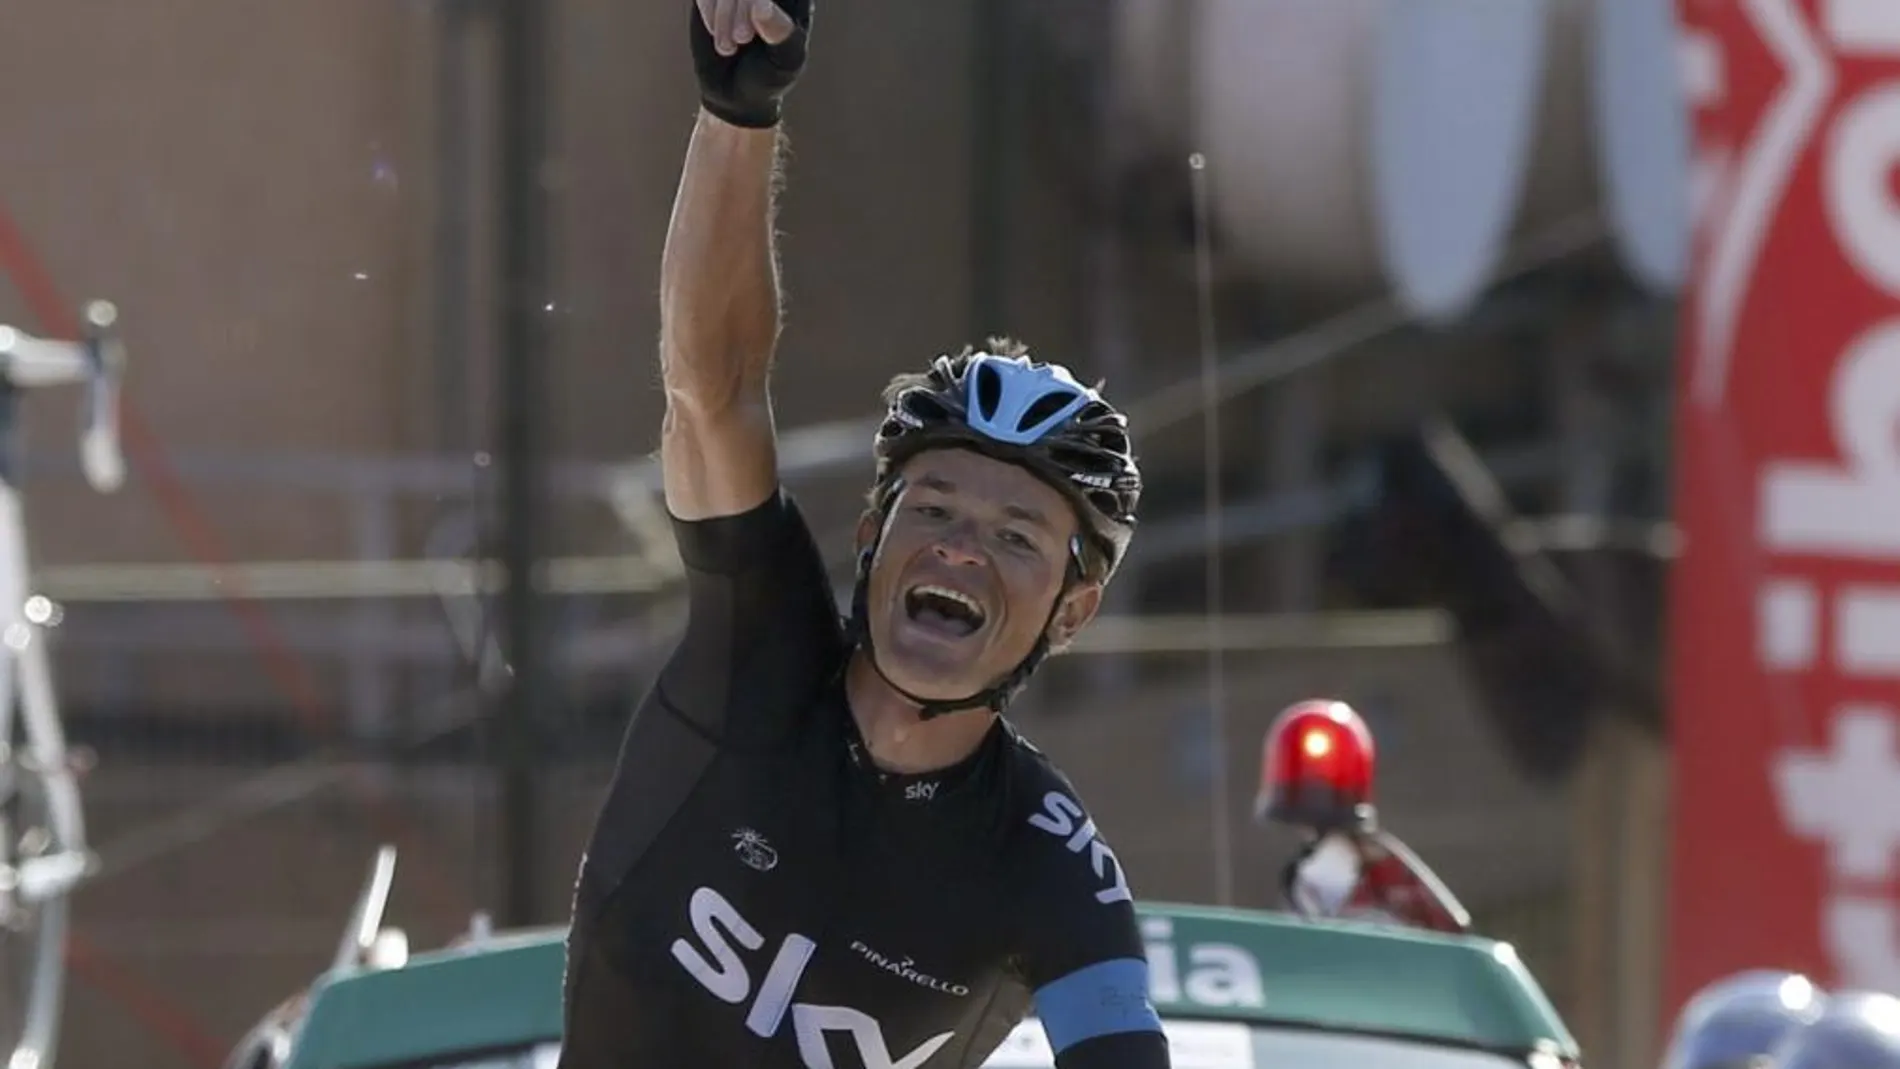 El bielorruso Vasil Kiryienka se impuso en solitario en la decimoctava etapa de la Vuelta